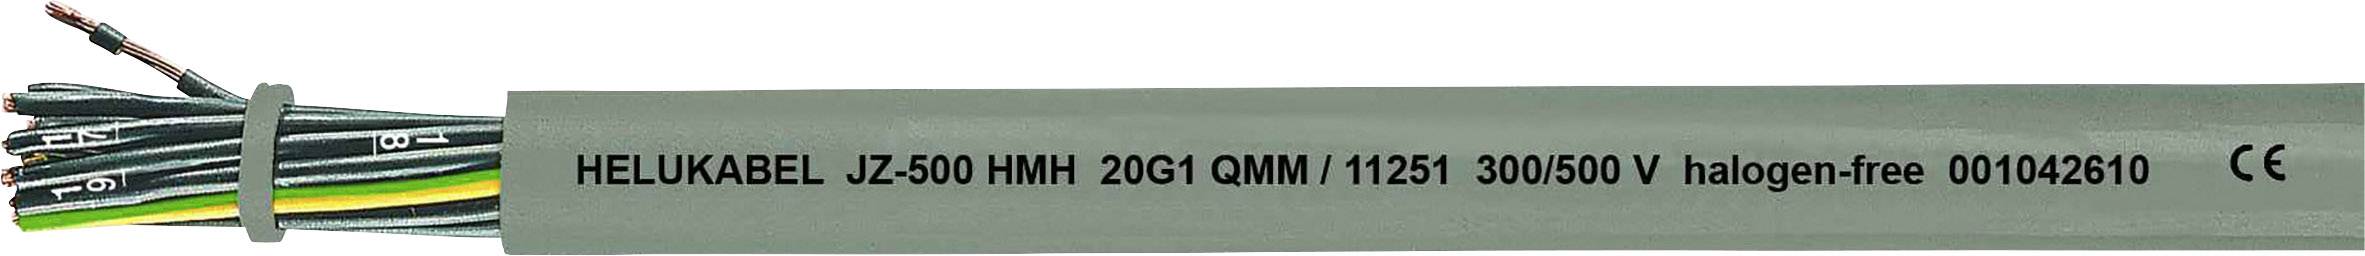 HELUKABEL JZ-500 HMH Steuerleitung 3 G 0.75 mm² Grau 11222-500 500 m